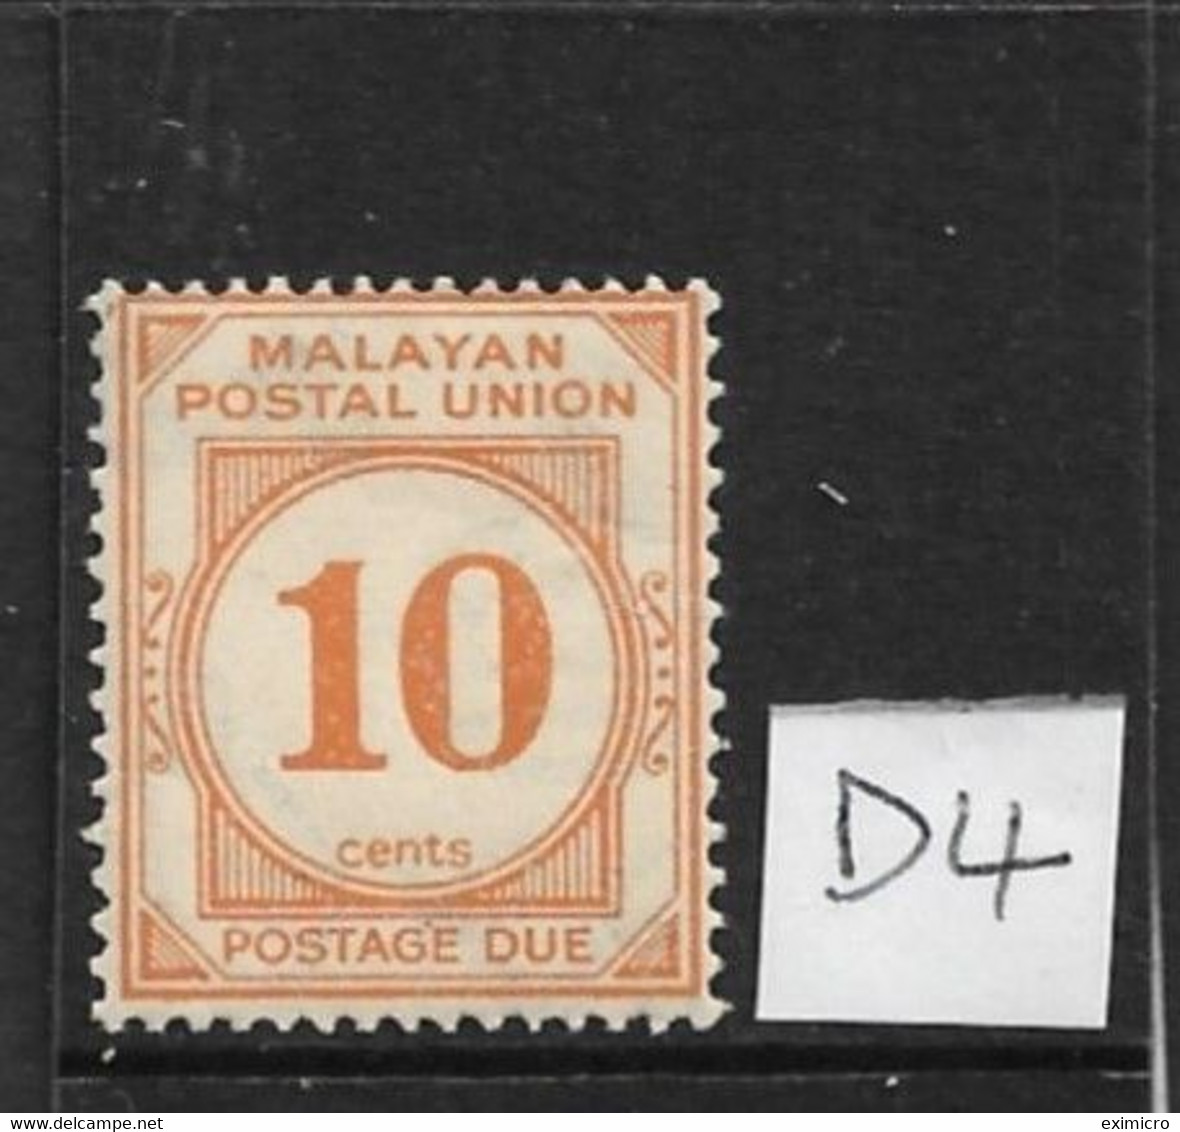 MALAYA - MALAYAN POSTAL UNION 1936 10c POSTAGE DUE SG D4 LIGHTLY MOUNTED MINT Cat £28 - Malayan Postal Union